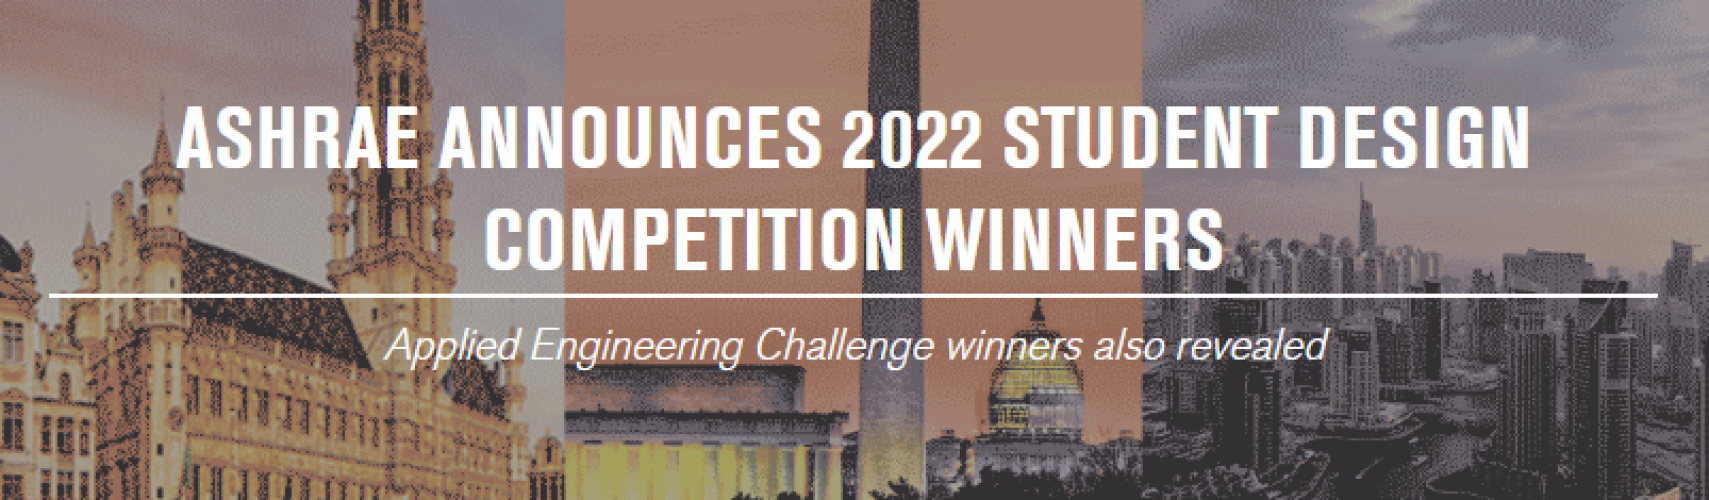 ASHRAE anuncia los ganadores del concurso de diseño para estudiantes de 2022